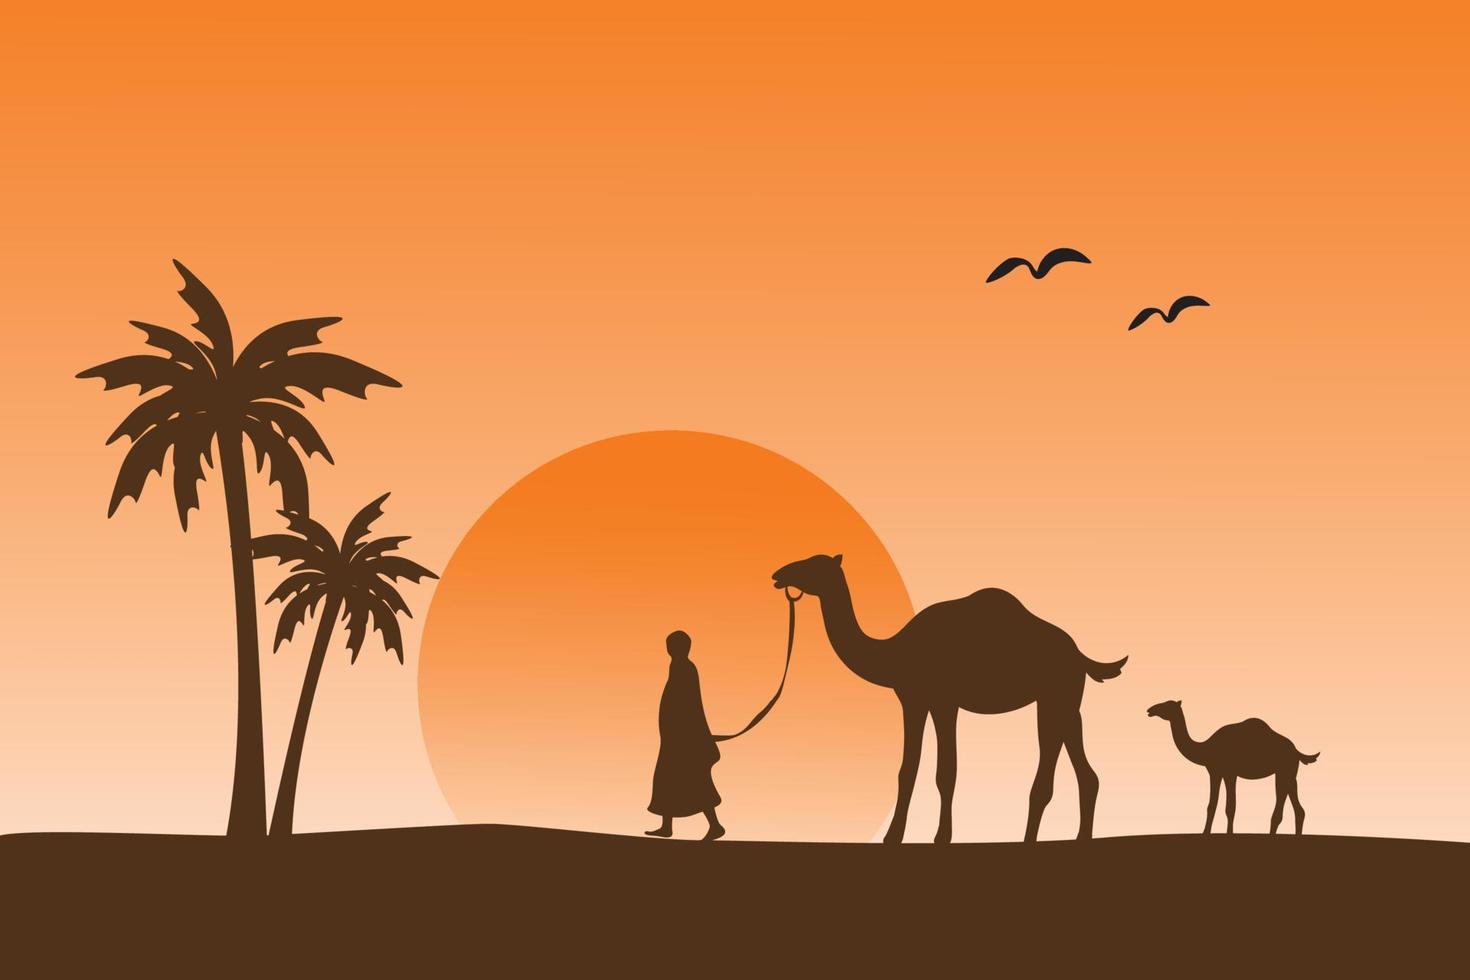 persoon die de kameel leidt, islamitisch achtergrondillustratiebehang, eid al adha-vakantie, mooi silhouetlandschap, zandwoestijn, gouden zonlicht, vectorafbeelding vector